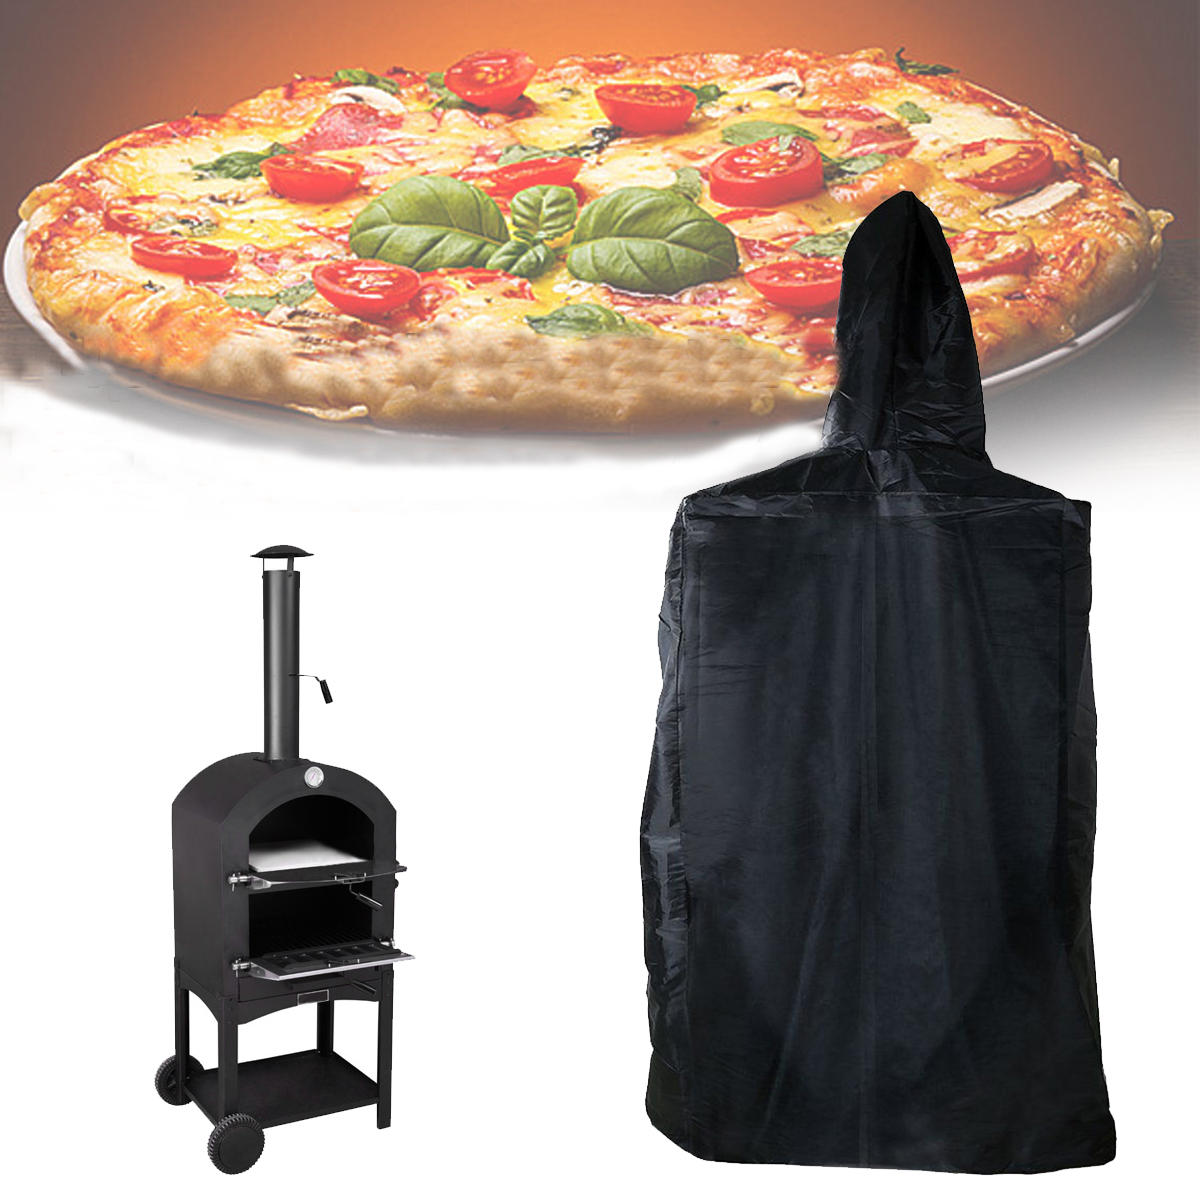 العربية: غطاء فرن بيتزا خارجي بأبعاد 160x37x50 سم، مقاوم للماء والغبار والأشعة فوق البنفسجية.